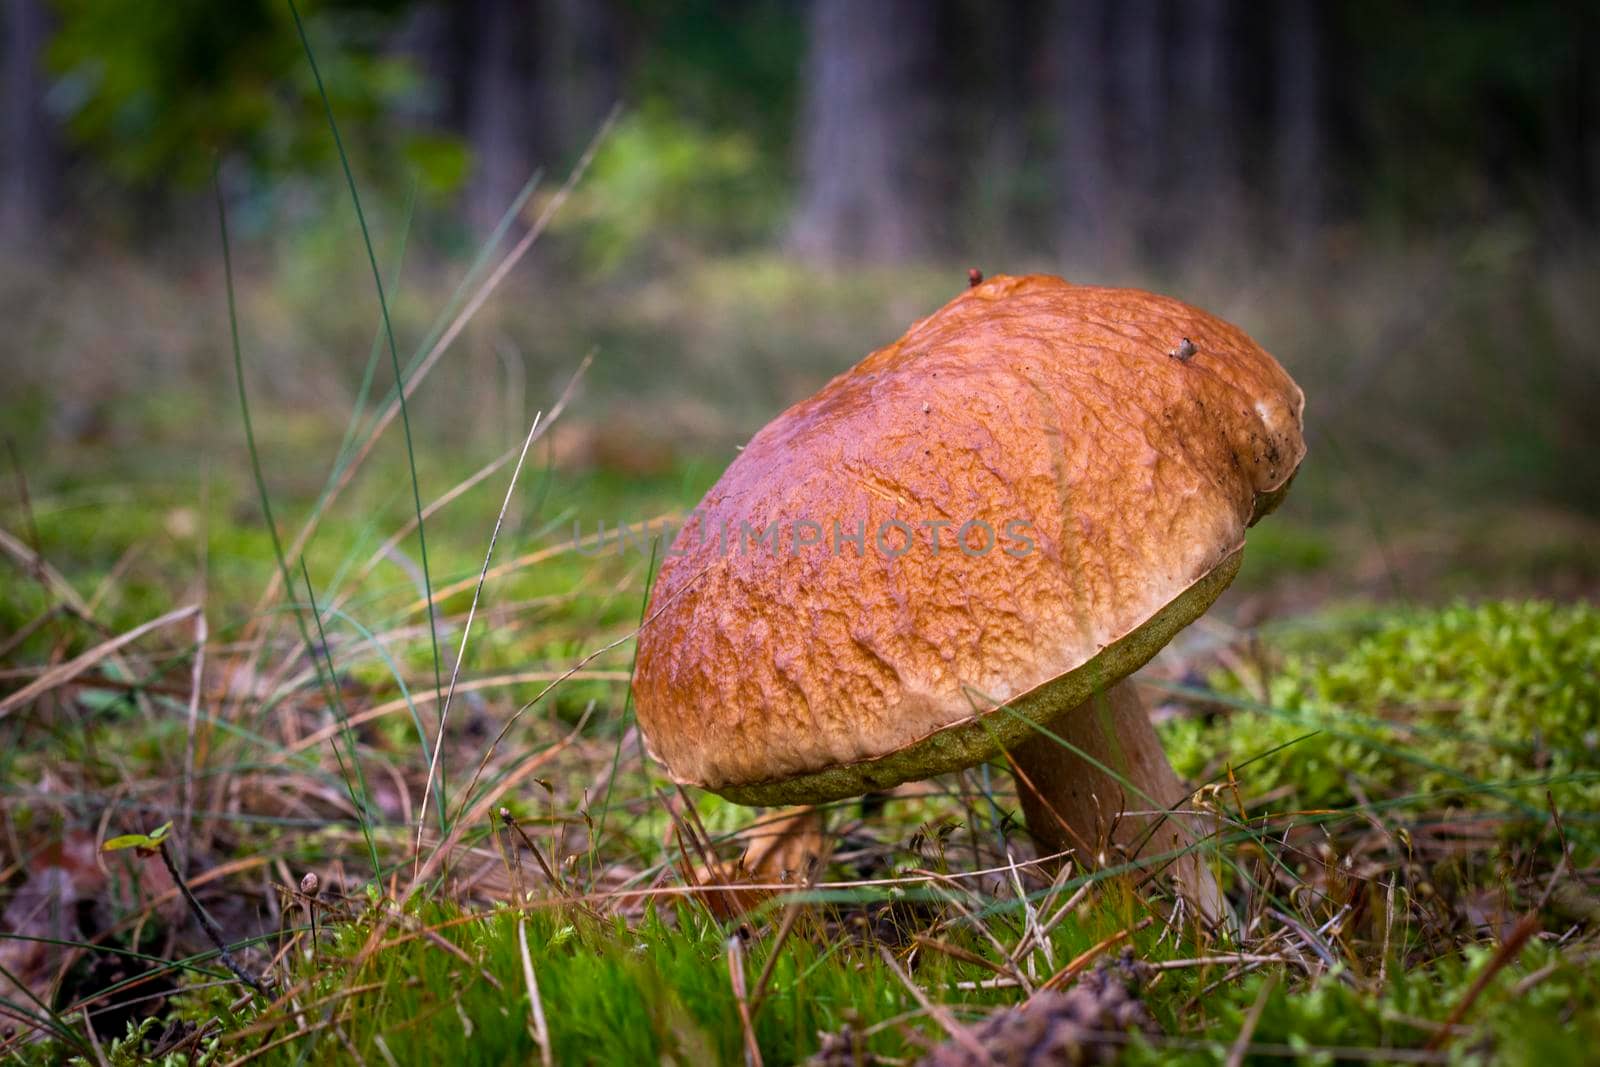 Big brown cap edible mushrooms in moss. Orange cap mushrooms in forest